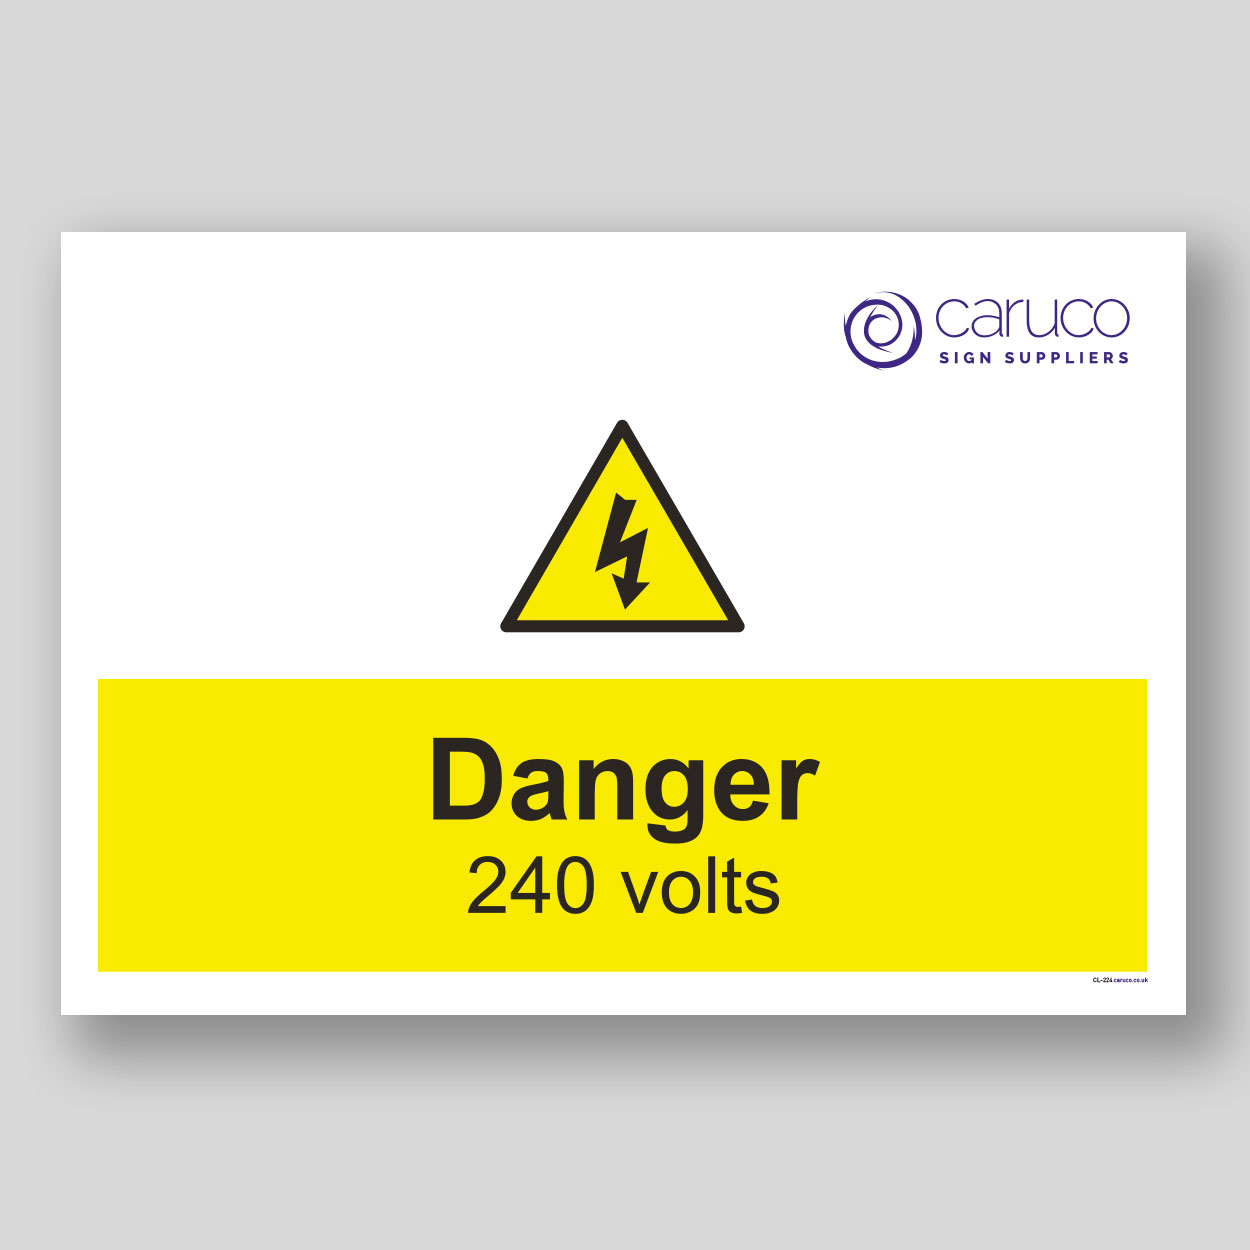 CL-224 Danger - 240 volts